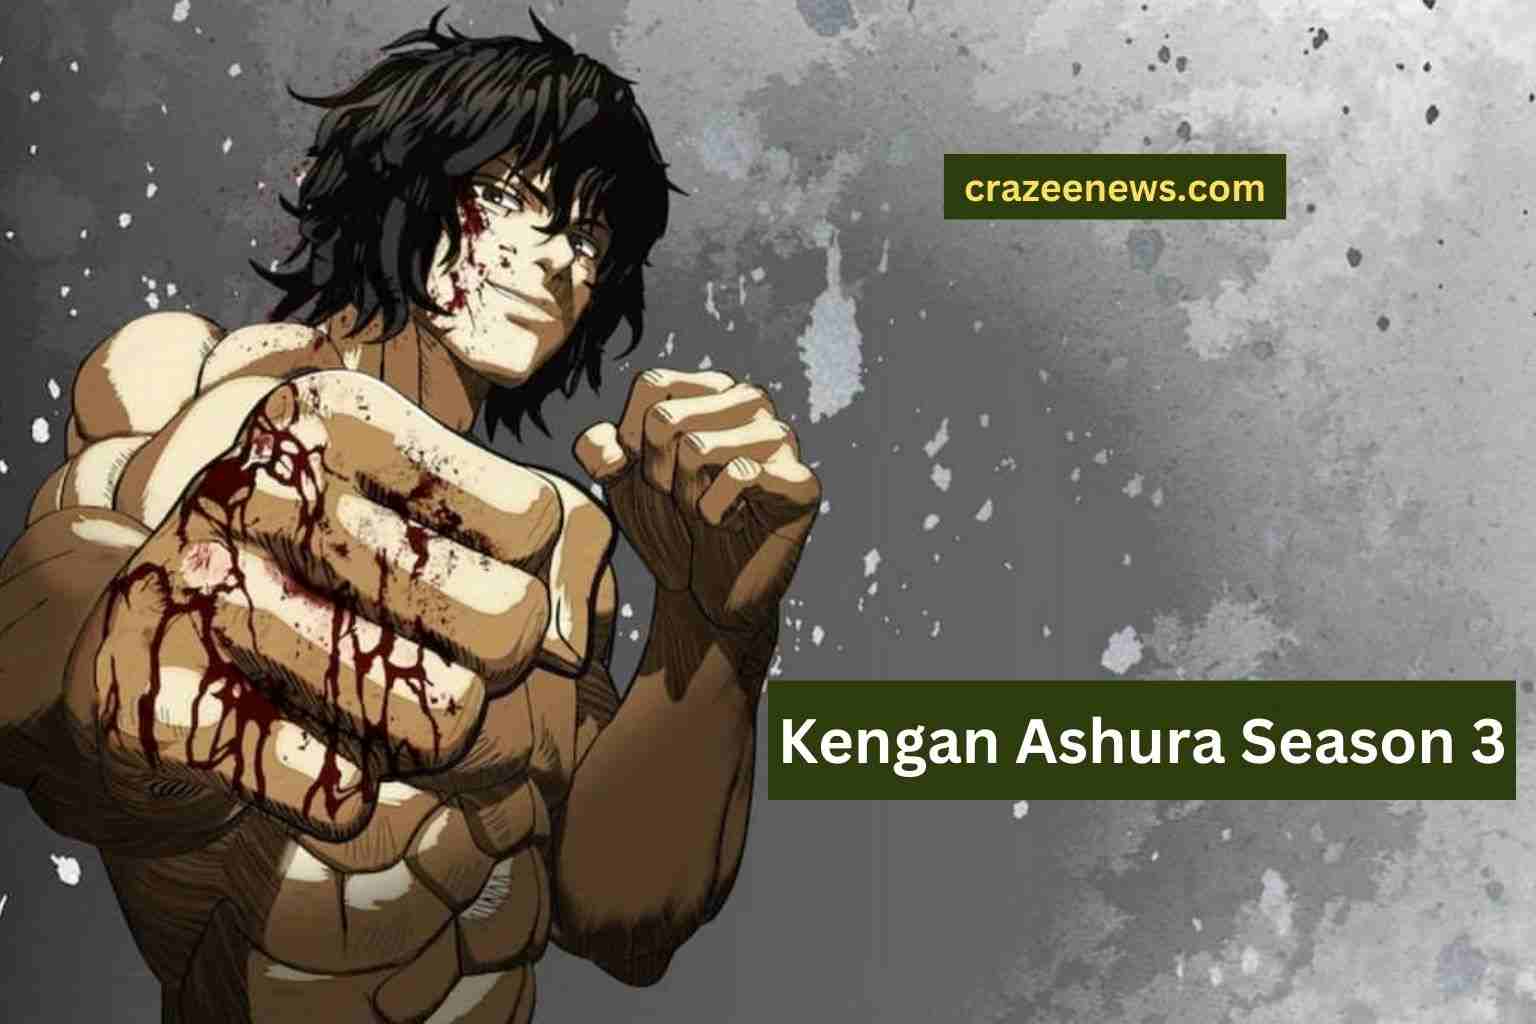 Kengan Ashura Season 3 release date